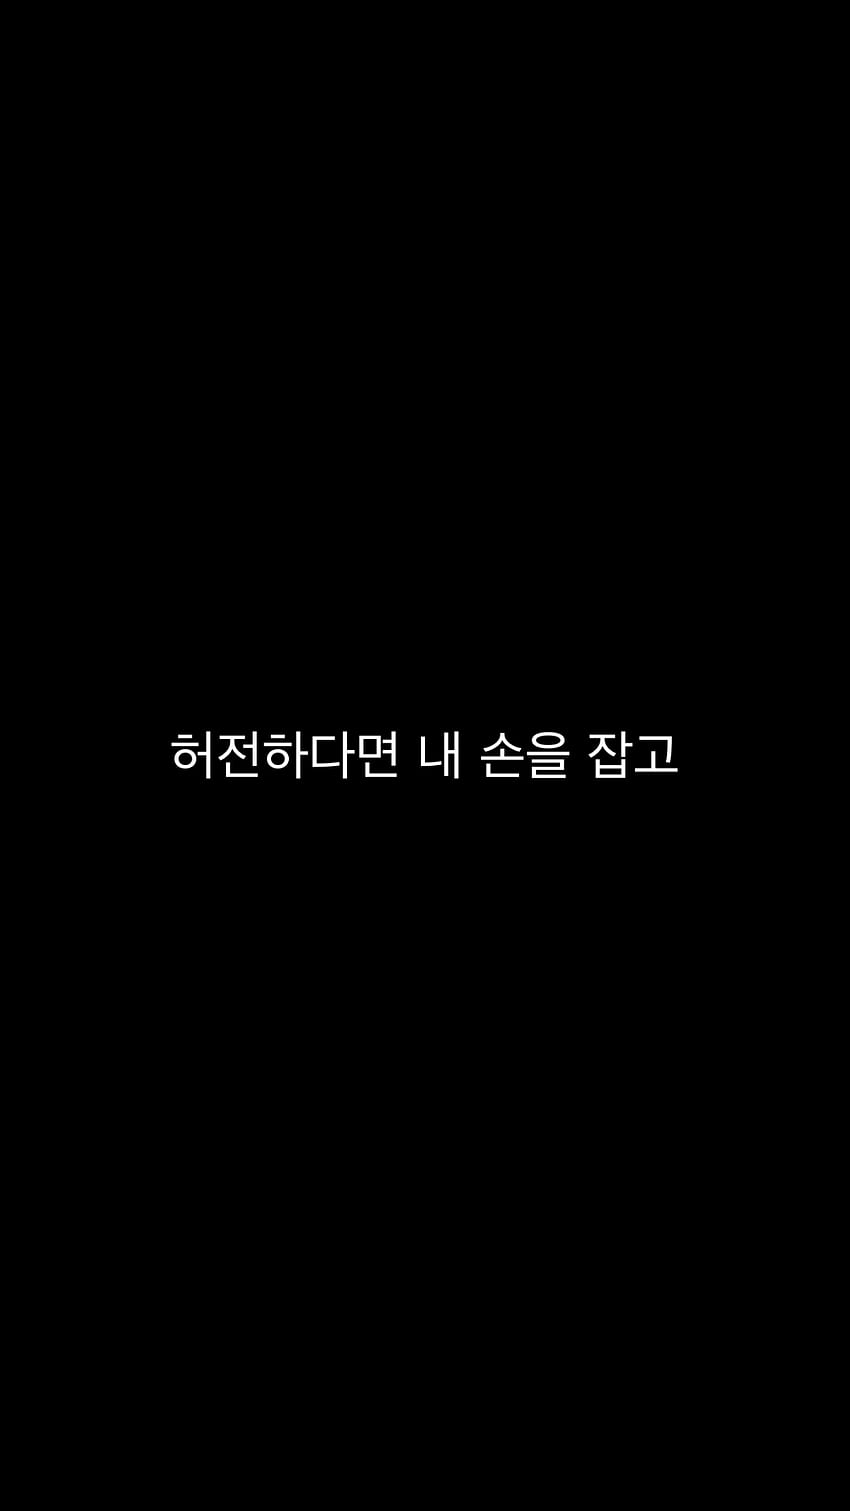 Pin oleh Sophie Sagaysay di di 2020. Lirik lagu, Bahasa korea, Lagu, Korean Saying HD phone wallpaper